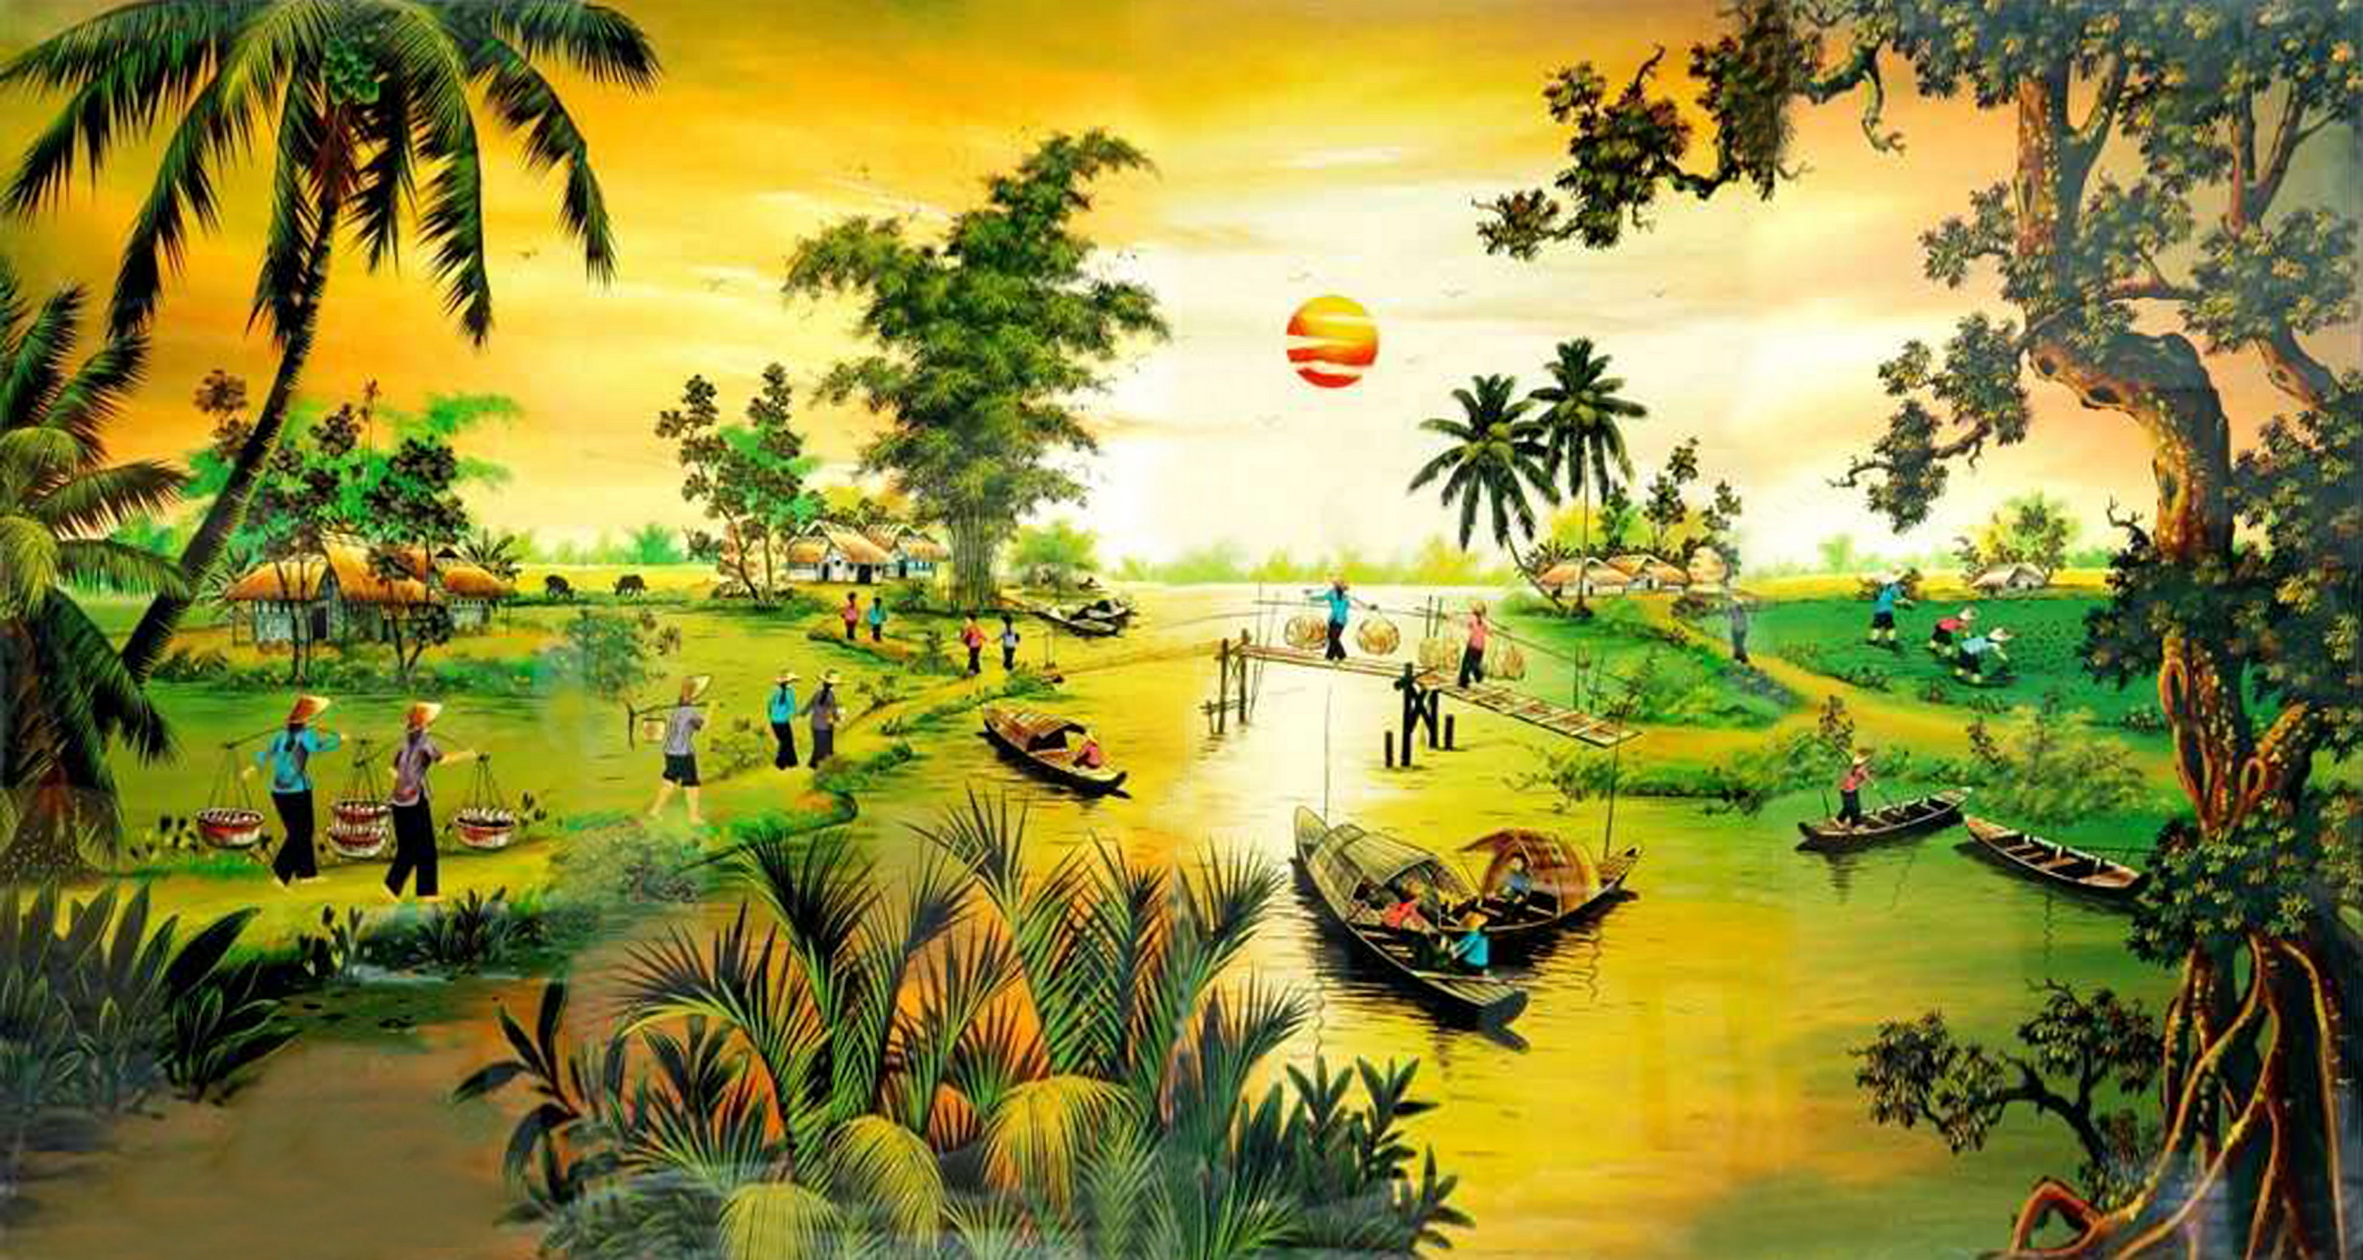 Hình ảnh tranh phong cảnh làng quê Việt Nam